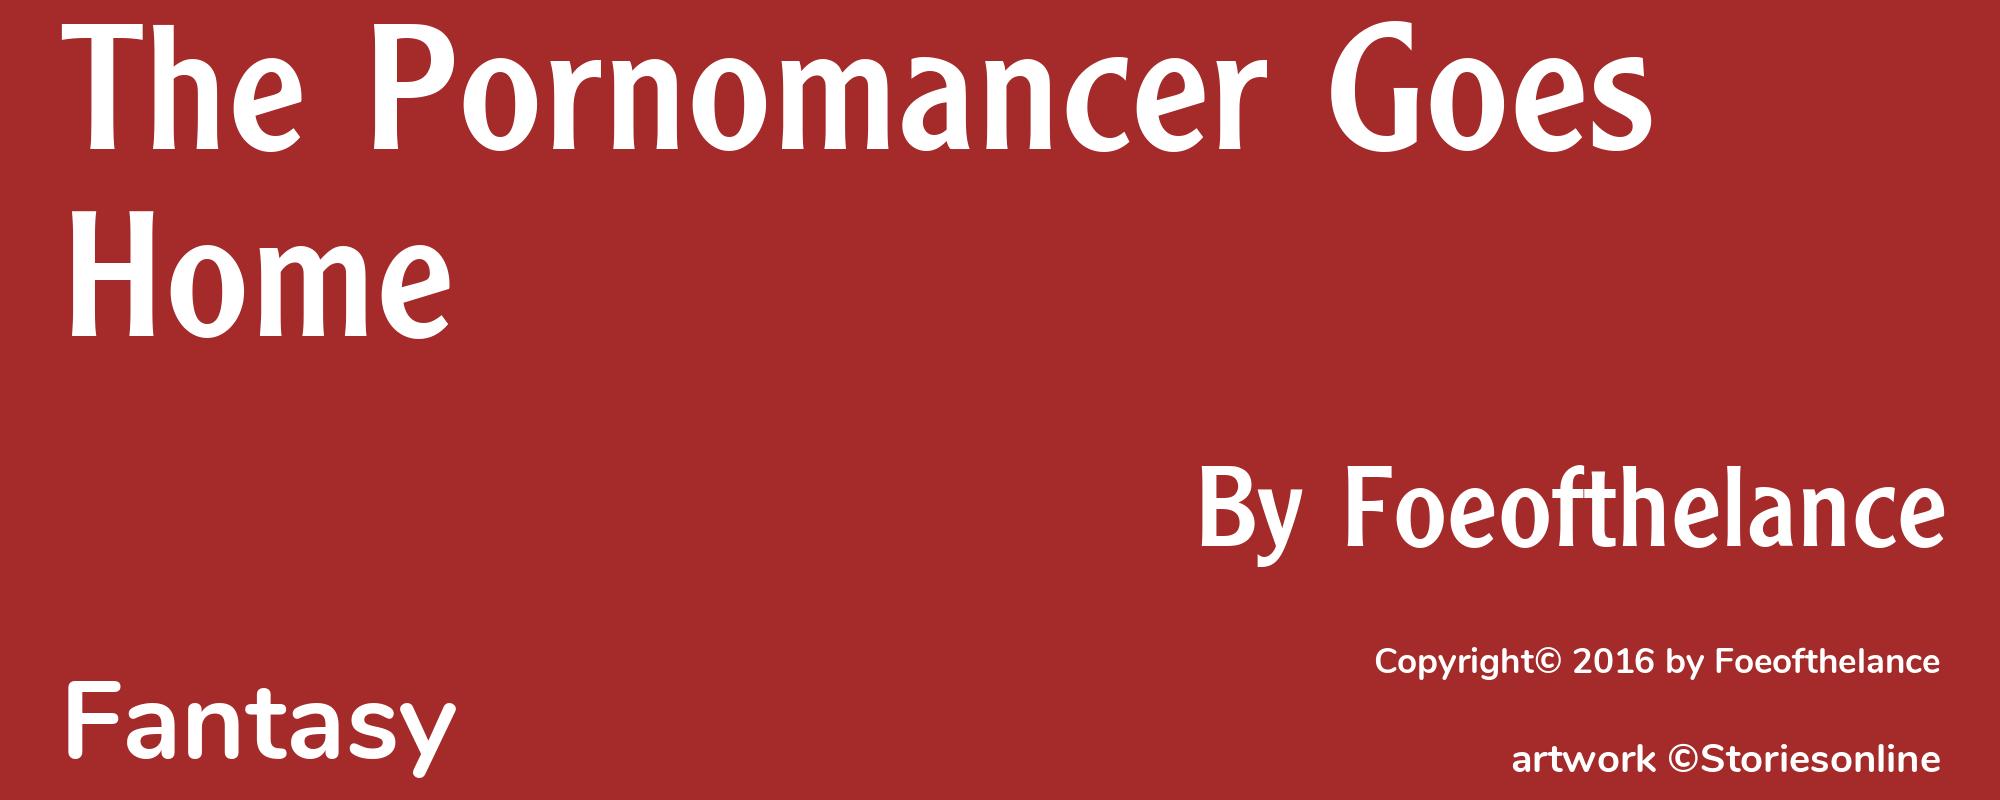 The Pornomancer Goes Home - Cover